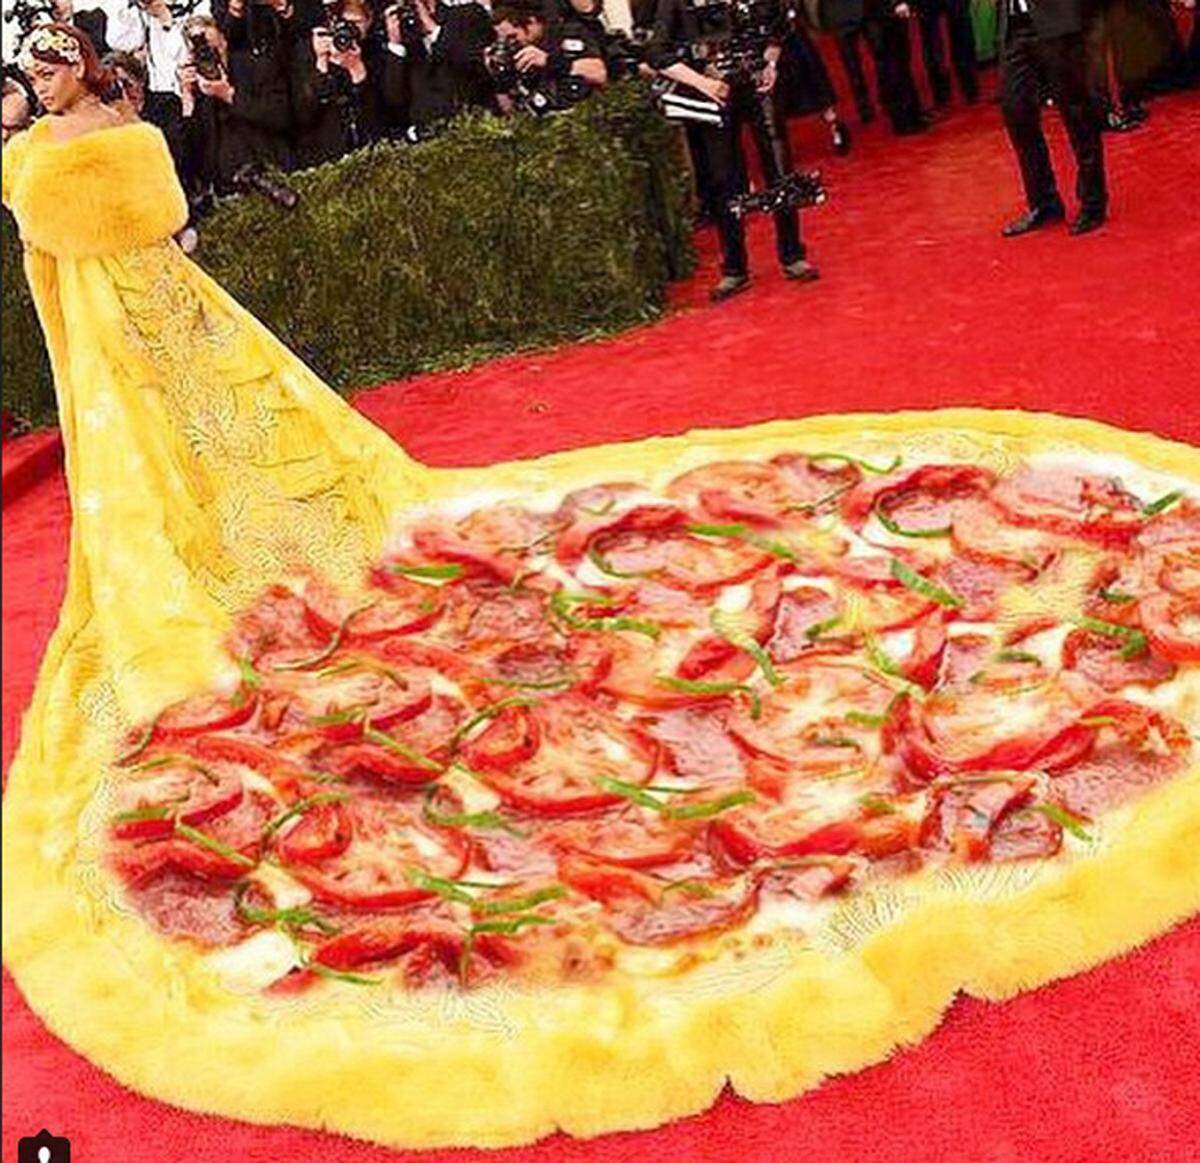 Das wohl auffälligsten Kleid der Met-Gala trug Rihanna. Der überlange Mantel in Kanariengelb von Designer Guo Pei hat die Internet-Gemeinde zu einigen Memes inspiriert. Mit dabei: Pizza, Eierspeise und Spongebob.